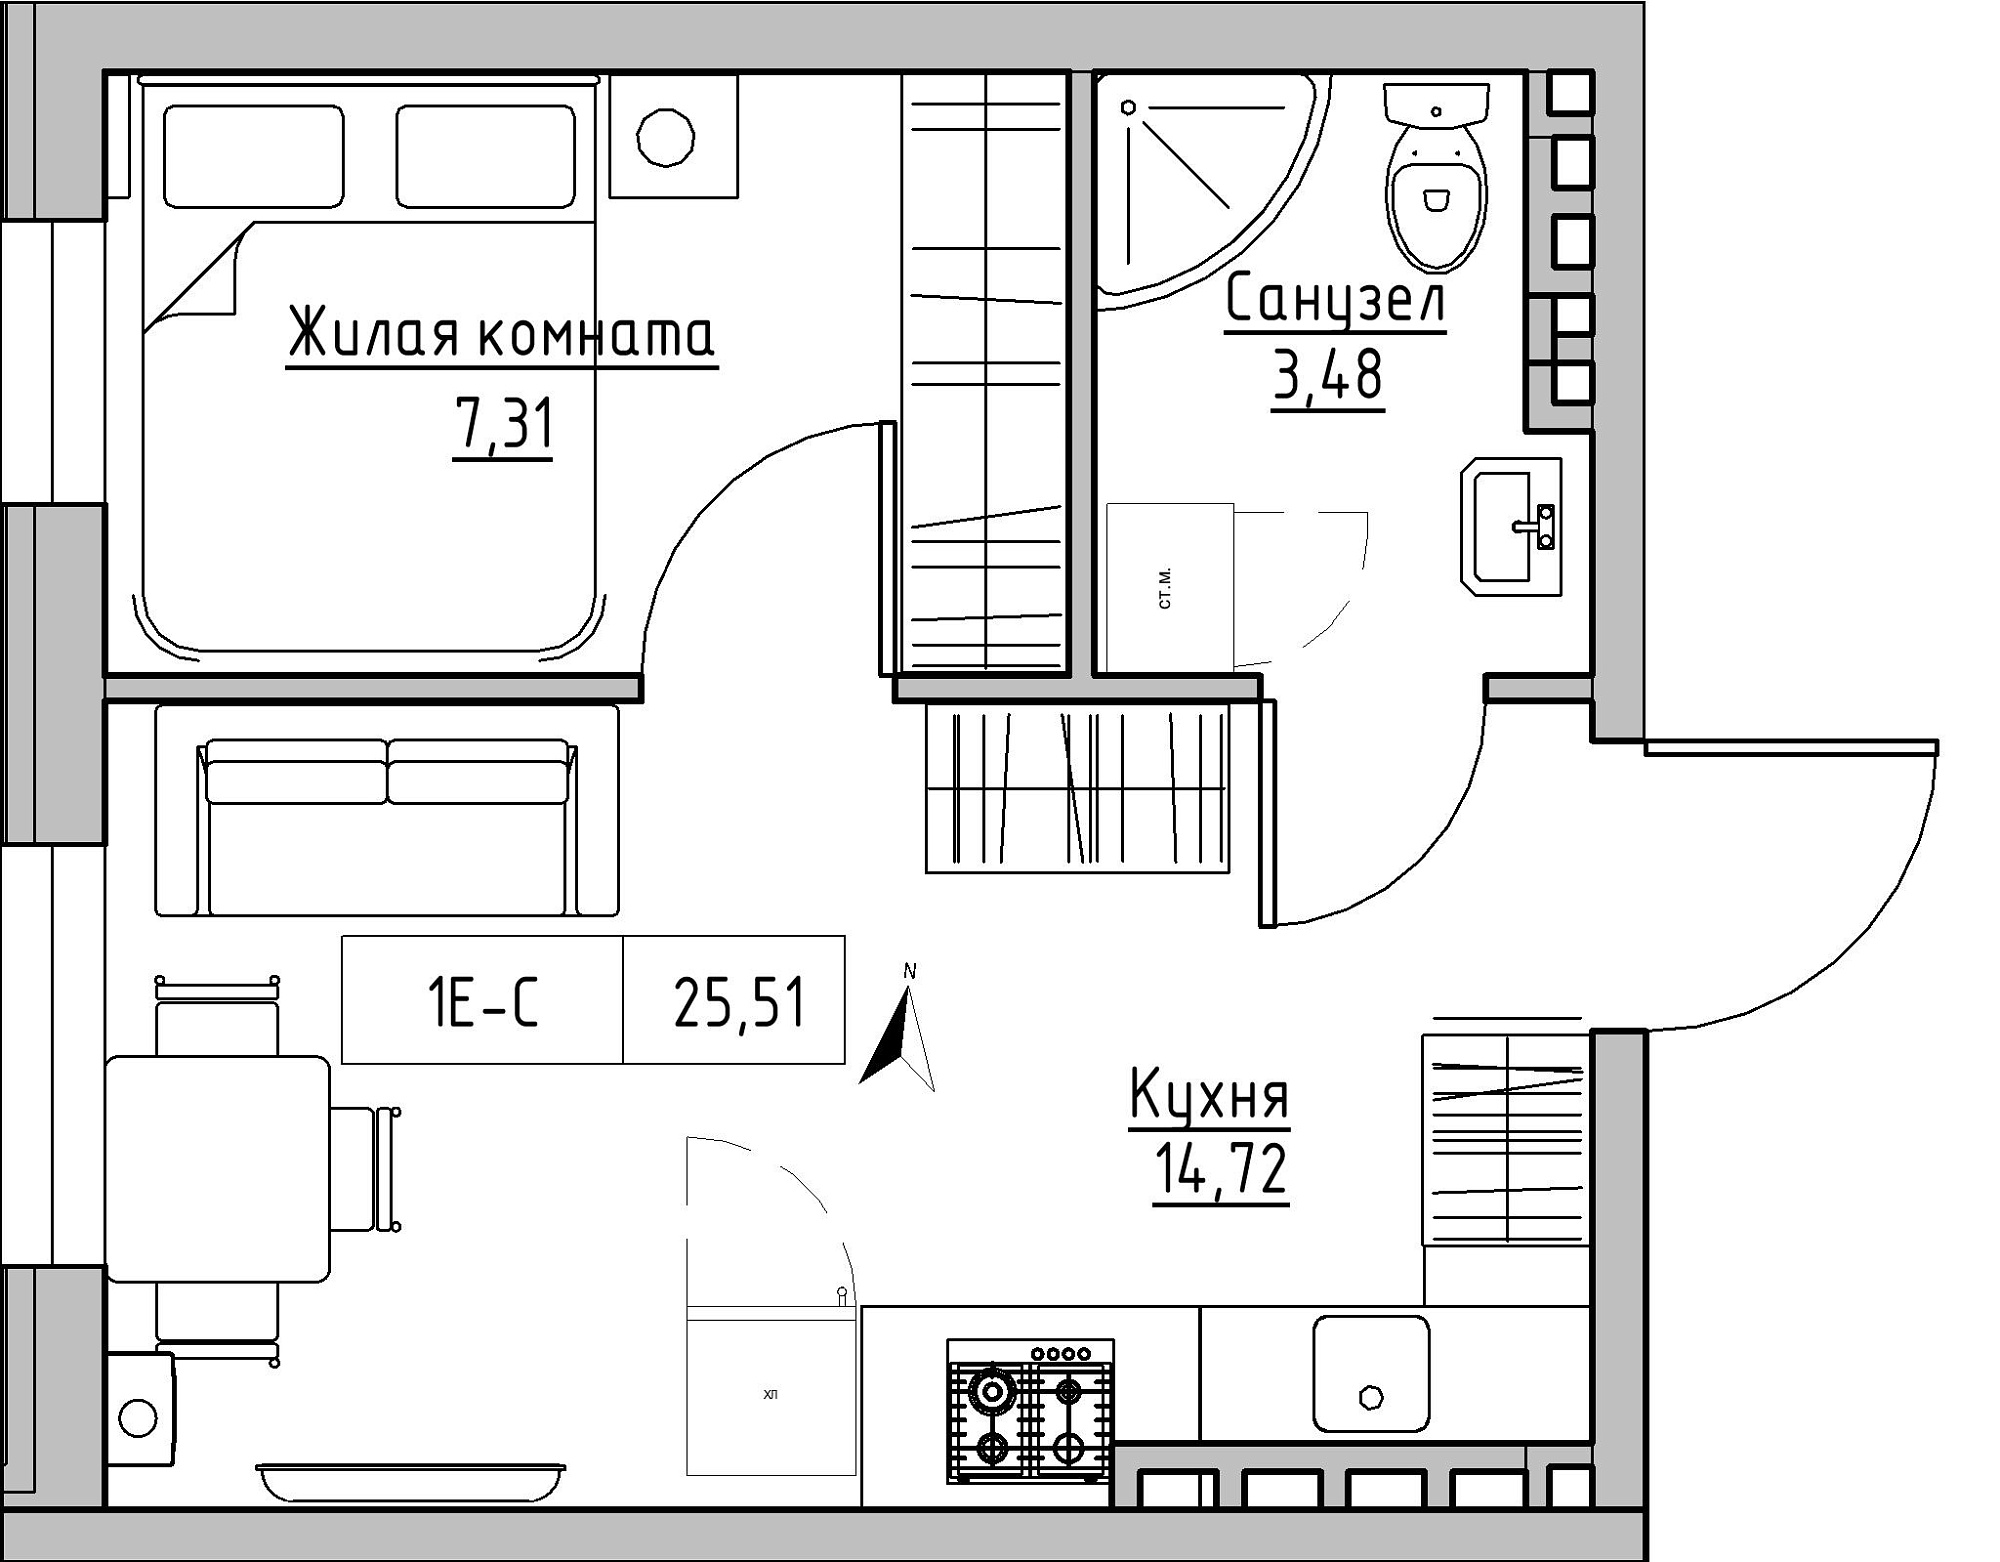 Планировка 1-к квартира площей 25.51м2, KS-024-05/0015.